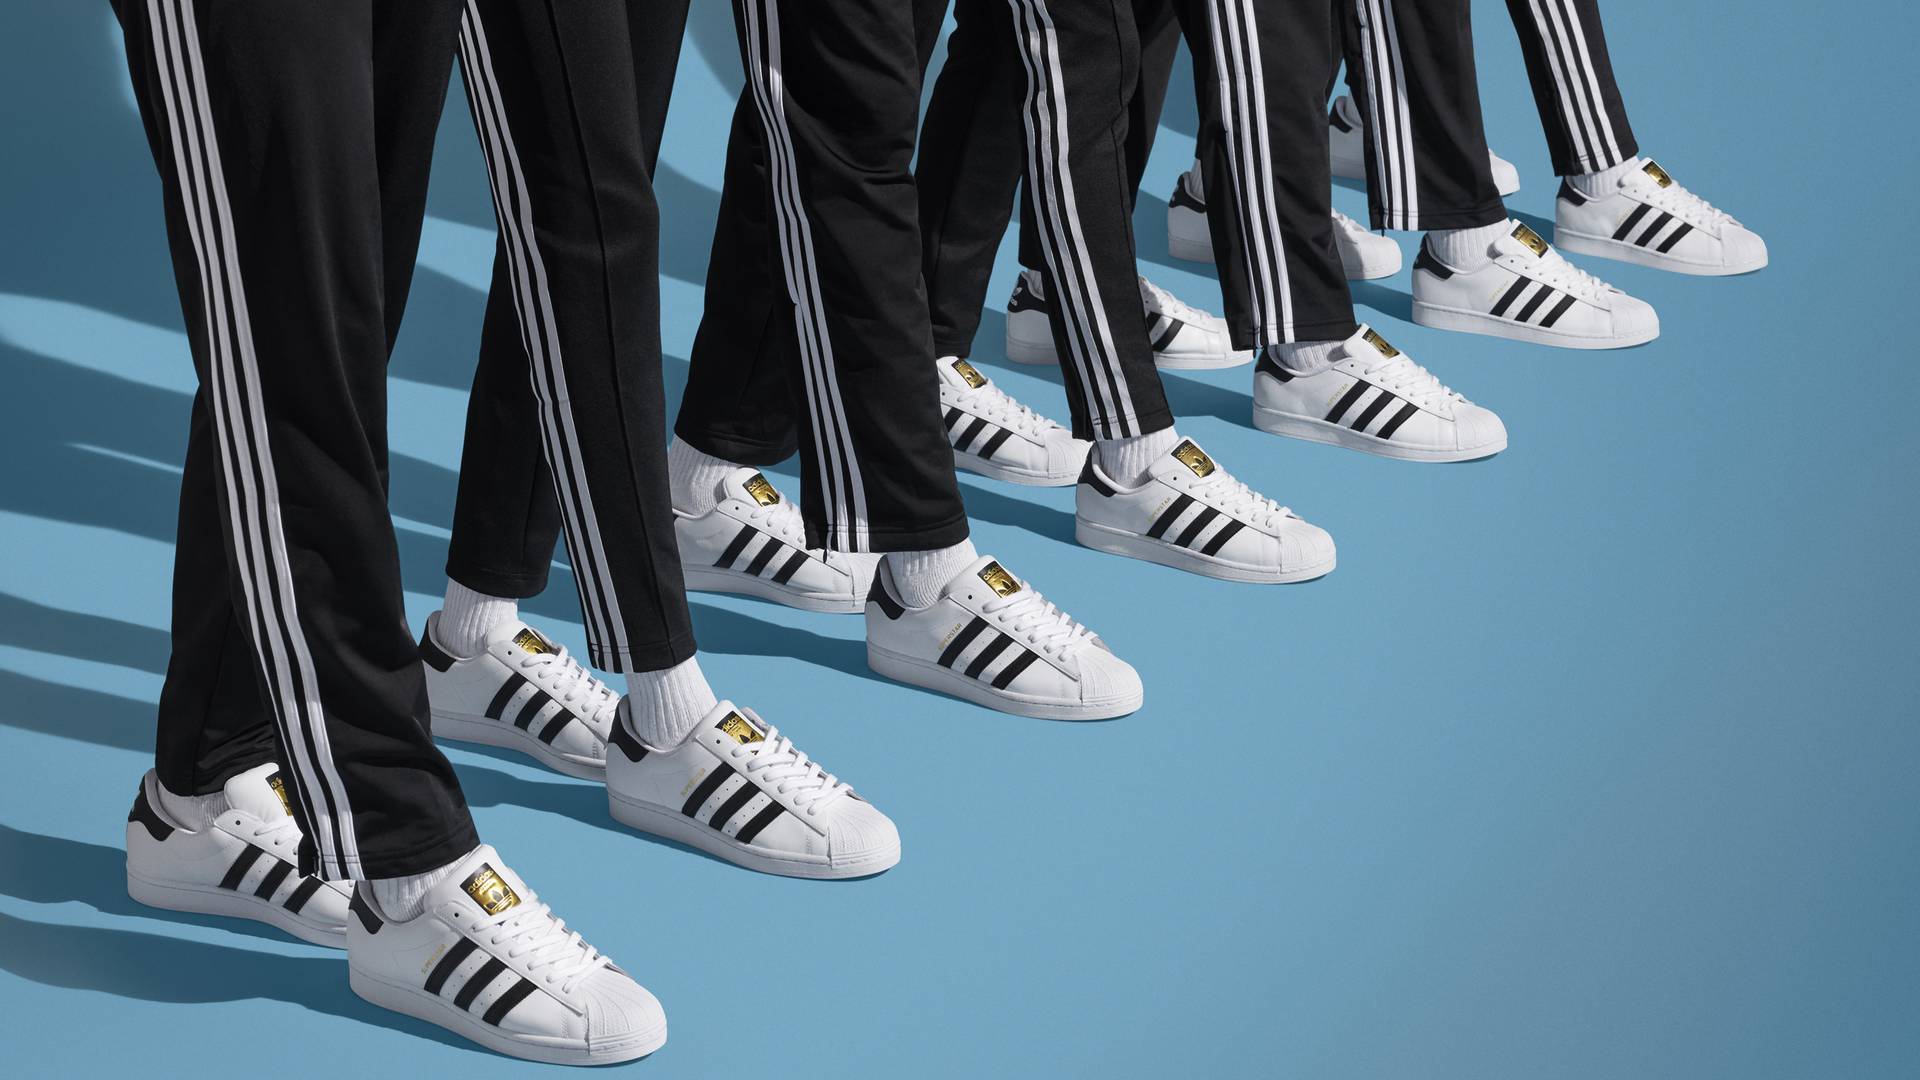 To te buty rozpoczęły streetwear - adidas Superstar kończą 50 lat